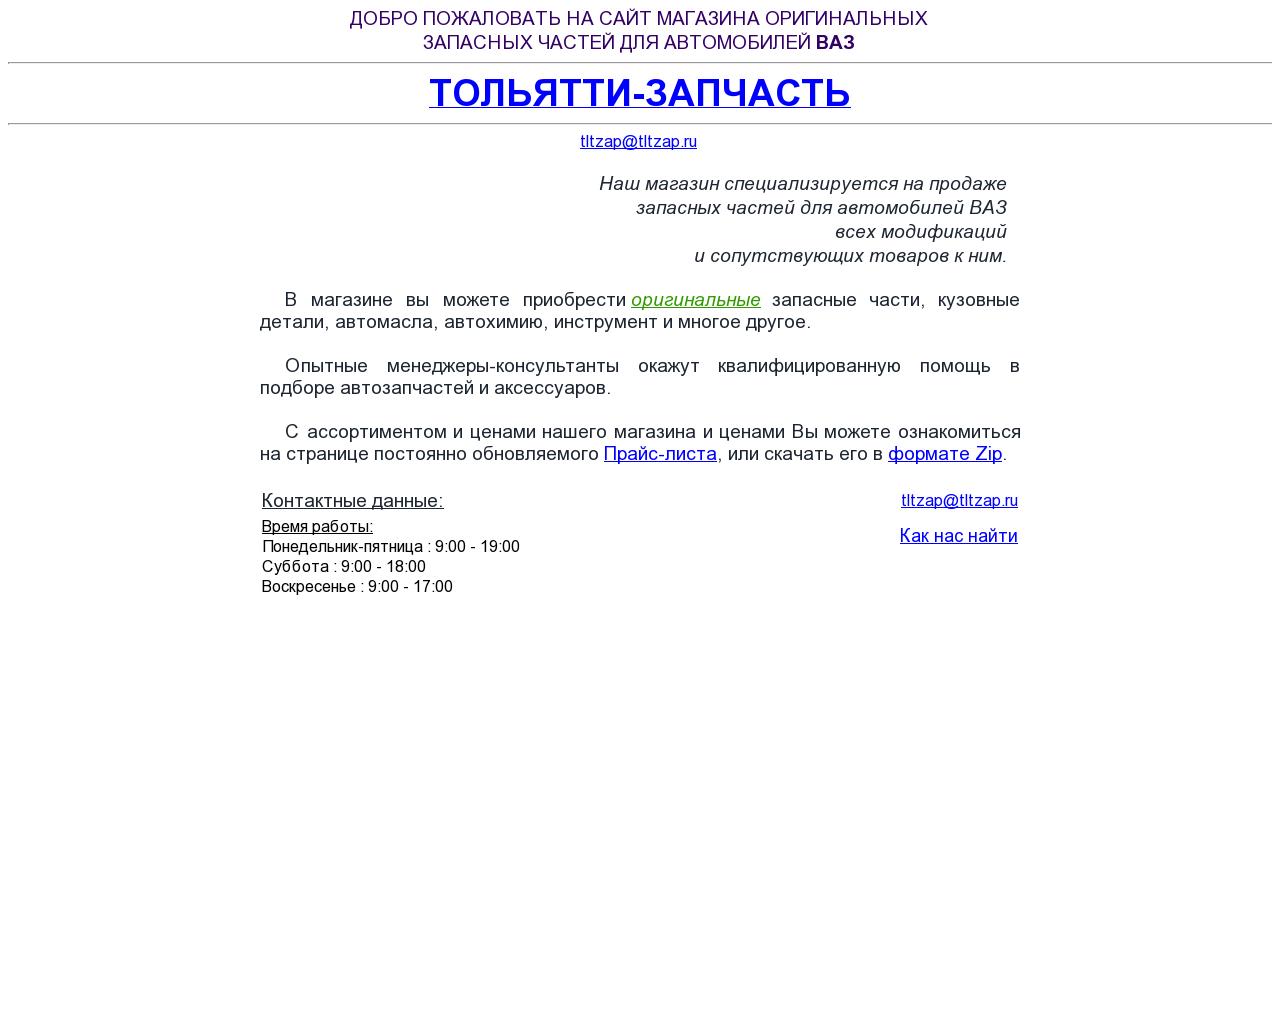 Изображение сайта tltzap.ru в разрешении 1280x1024